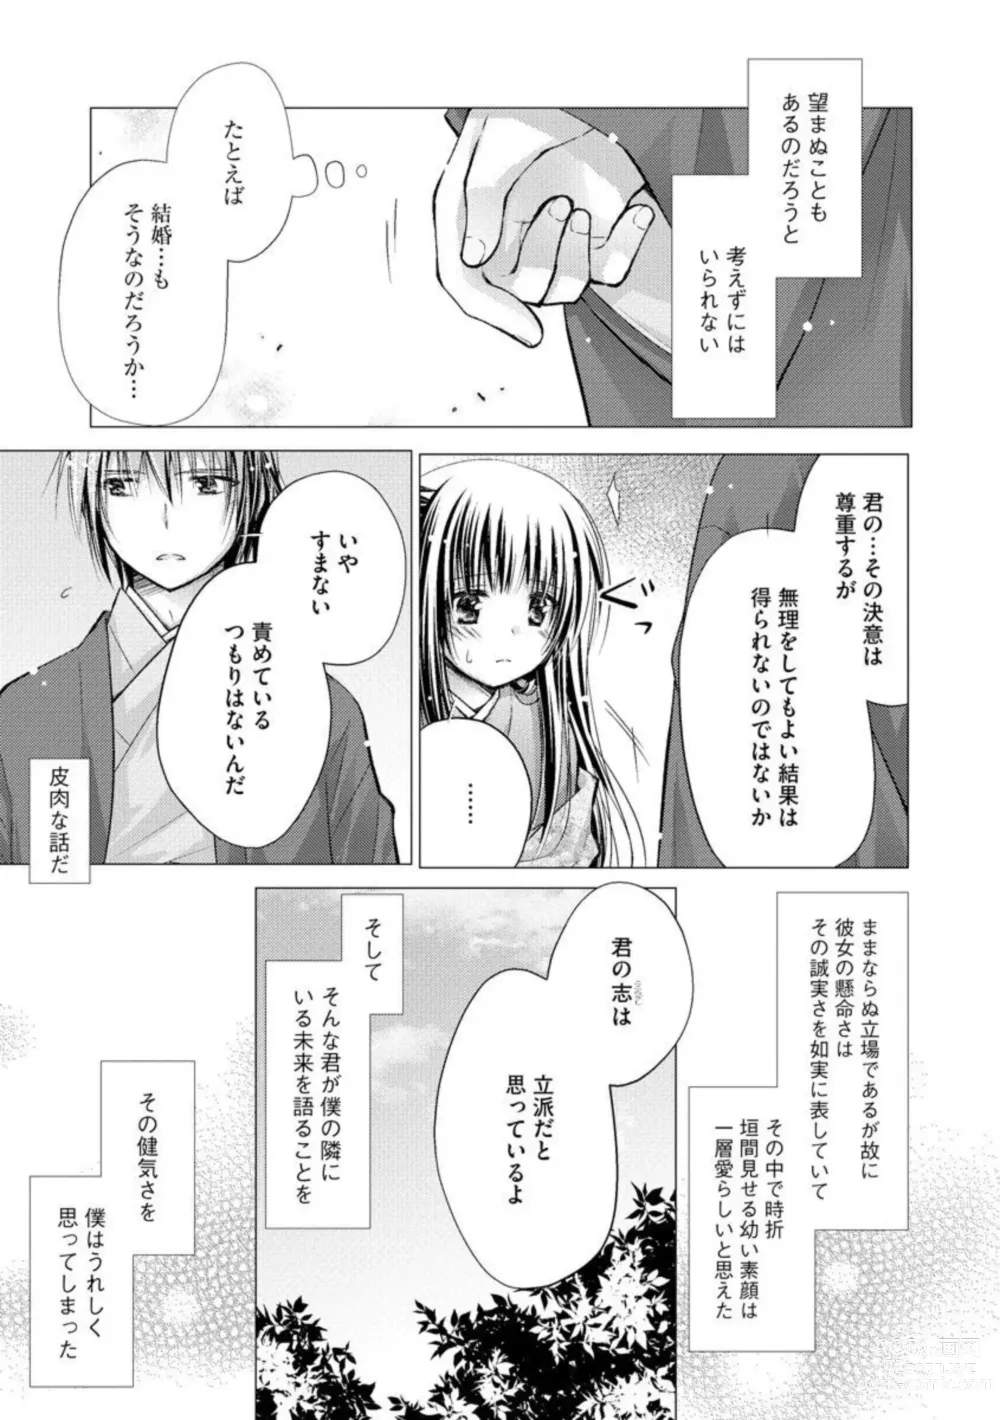 Page 11 of manga Aishin Retoroshizumu 1